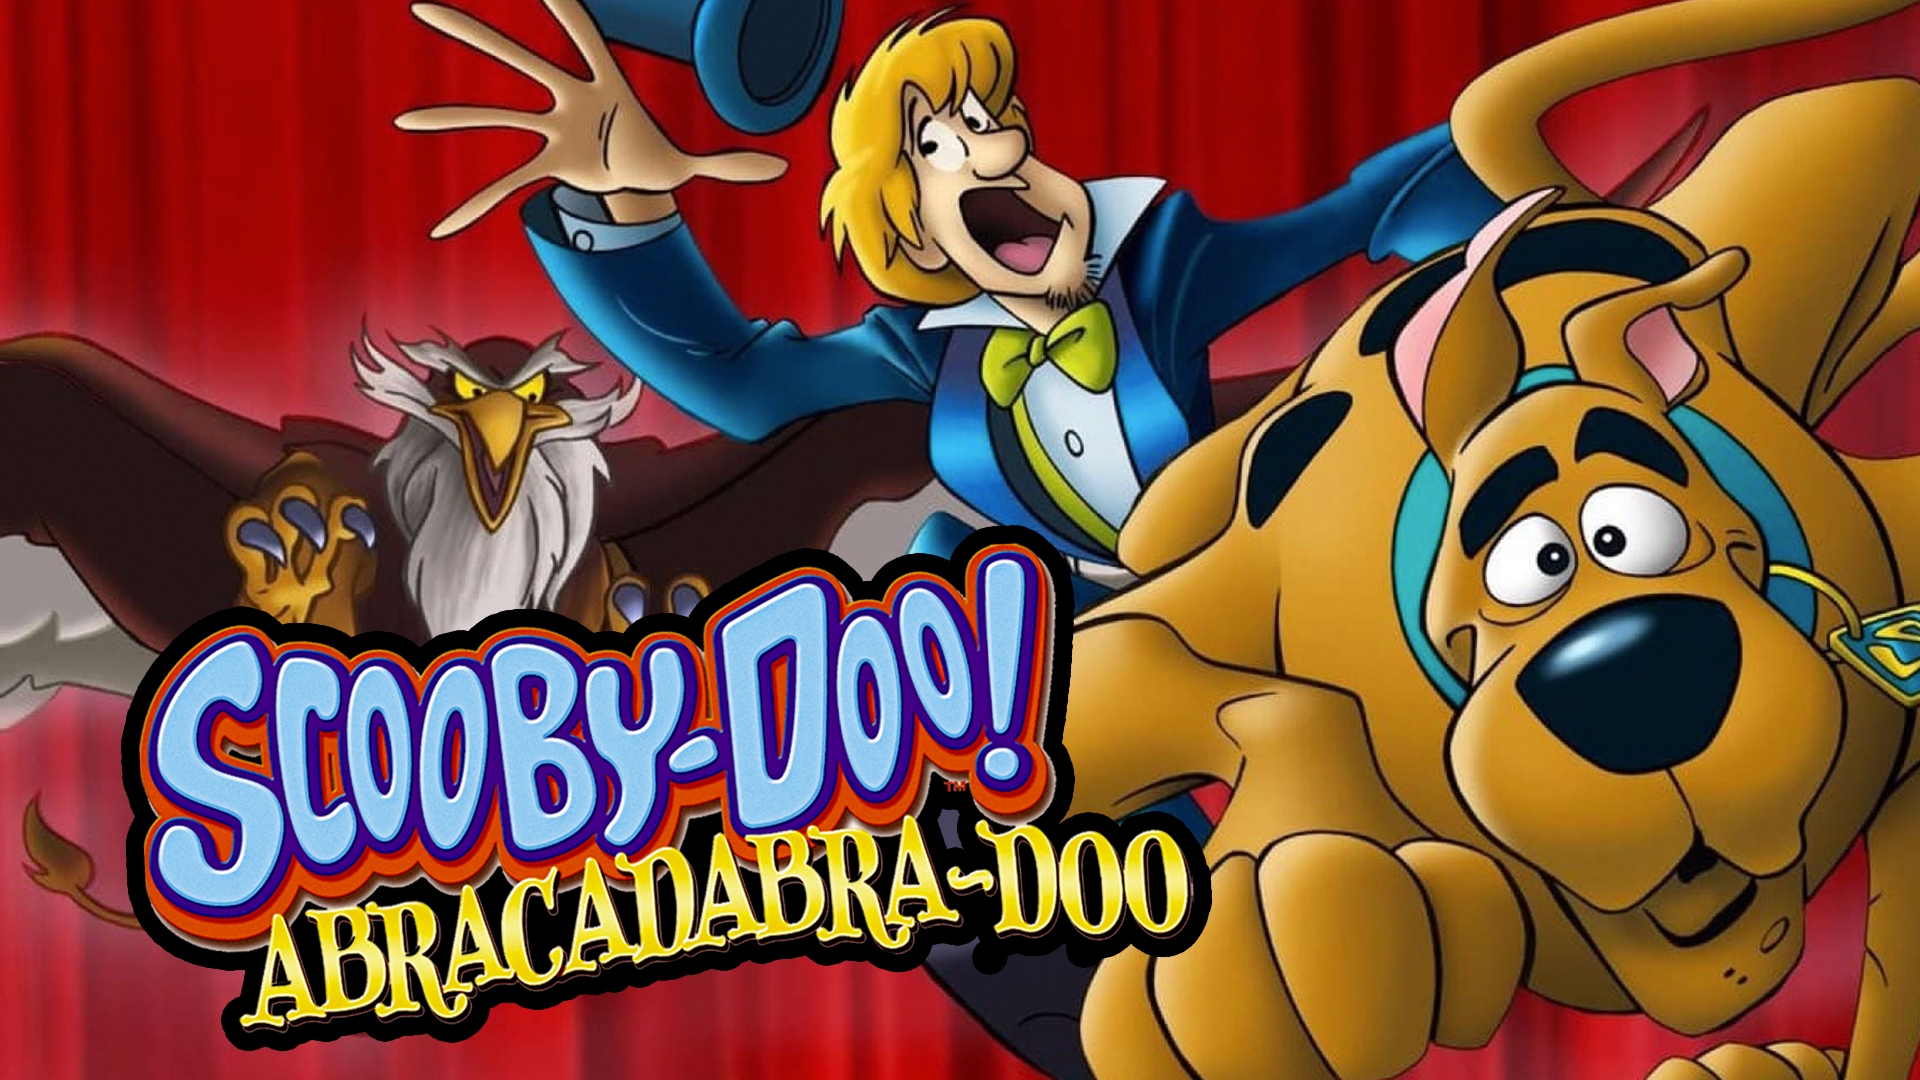 Stream Scooby-Doo! Abracadabra-Doo Online | Download and Watch HD ...